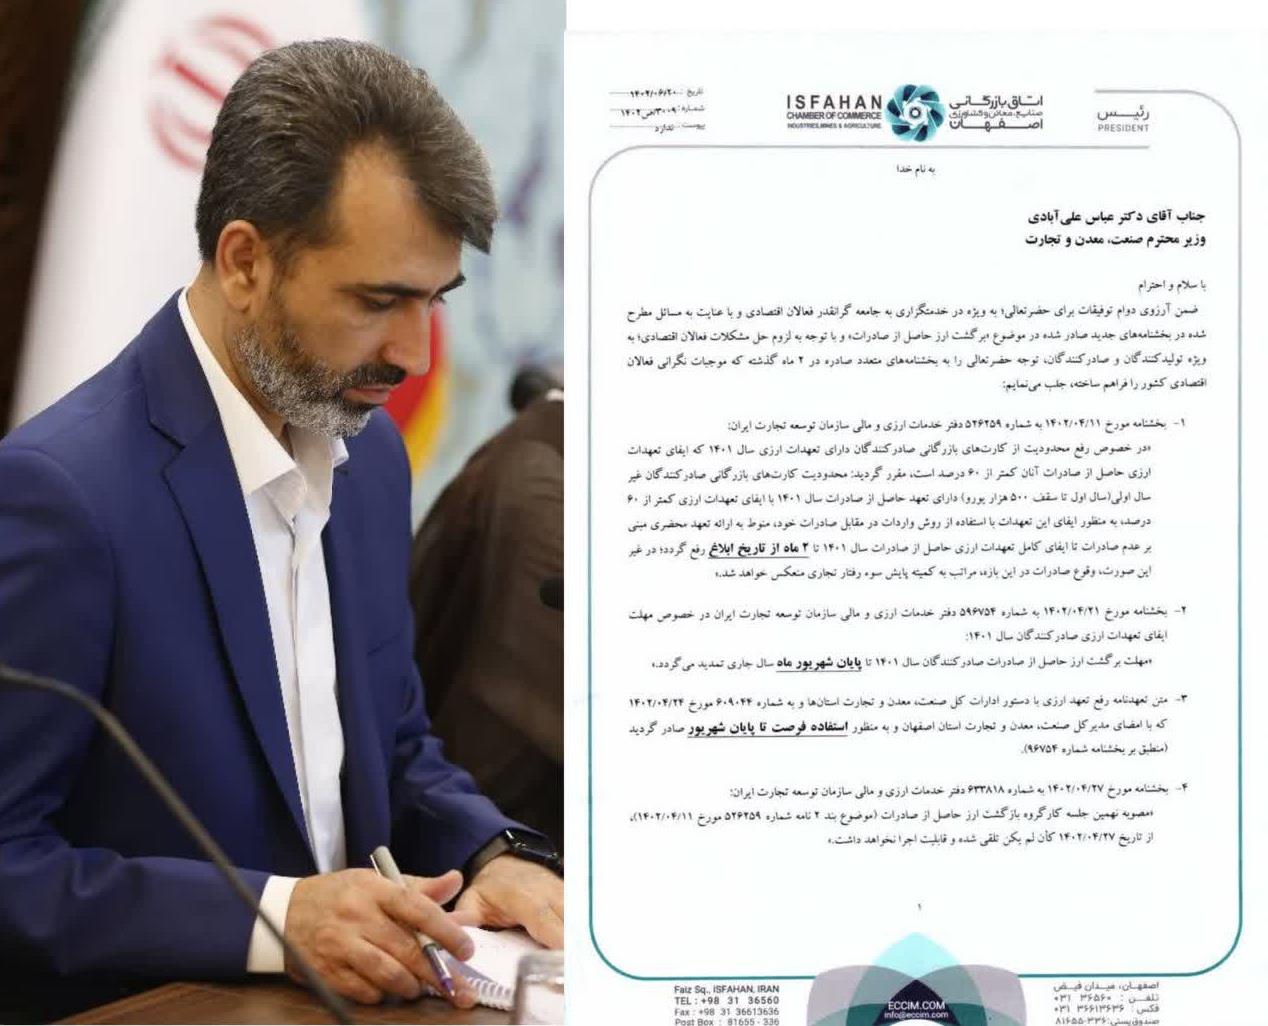 رئیس اتاق بازرگانی اصفهان در نامه‌ای به وزیر صنعت، معدن و تجارت خواستار رفع مشکلات فعالان اقتصادی در خصوص موضوع «بازگشت ارز حاصل از صادرات» شد.